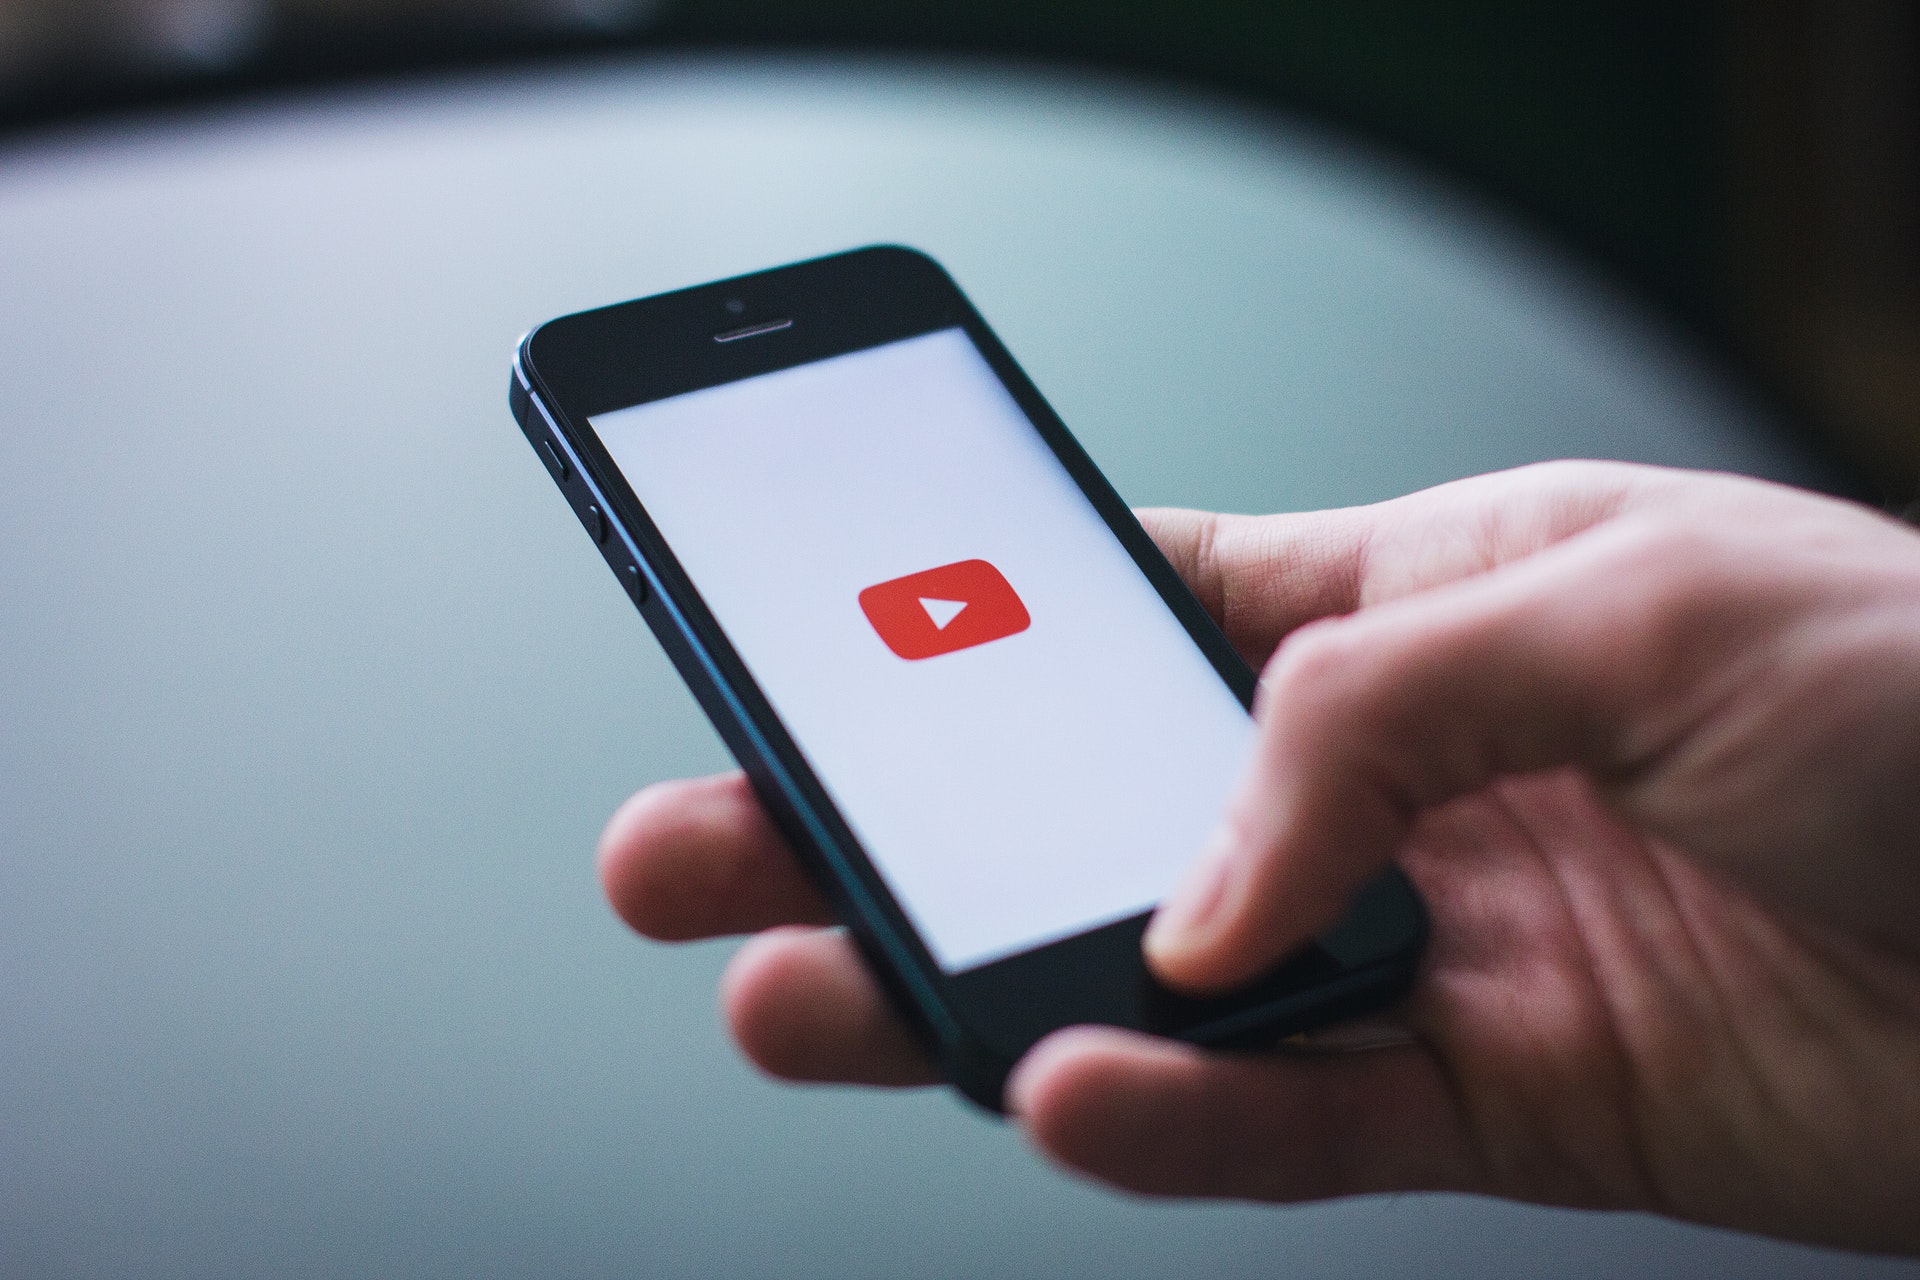 MOBILE ADVERTISING - YouTube dla reklamodawców - zarządzanie bezpieczeństwem i spójnością marki YouTube YouTube dla reklamodawcow zarzadzanie bezpieczenstwem i spojnoscia marki